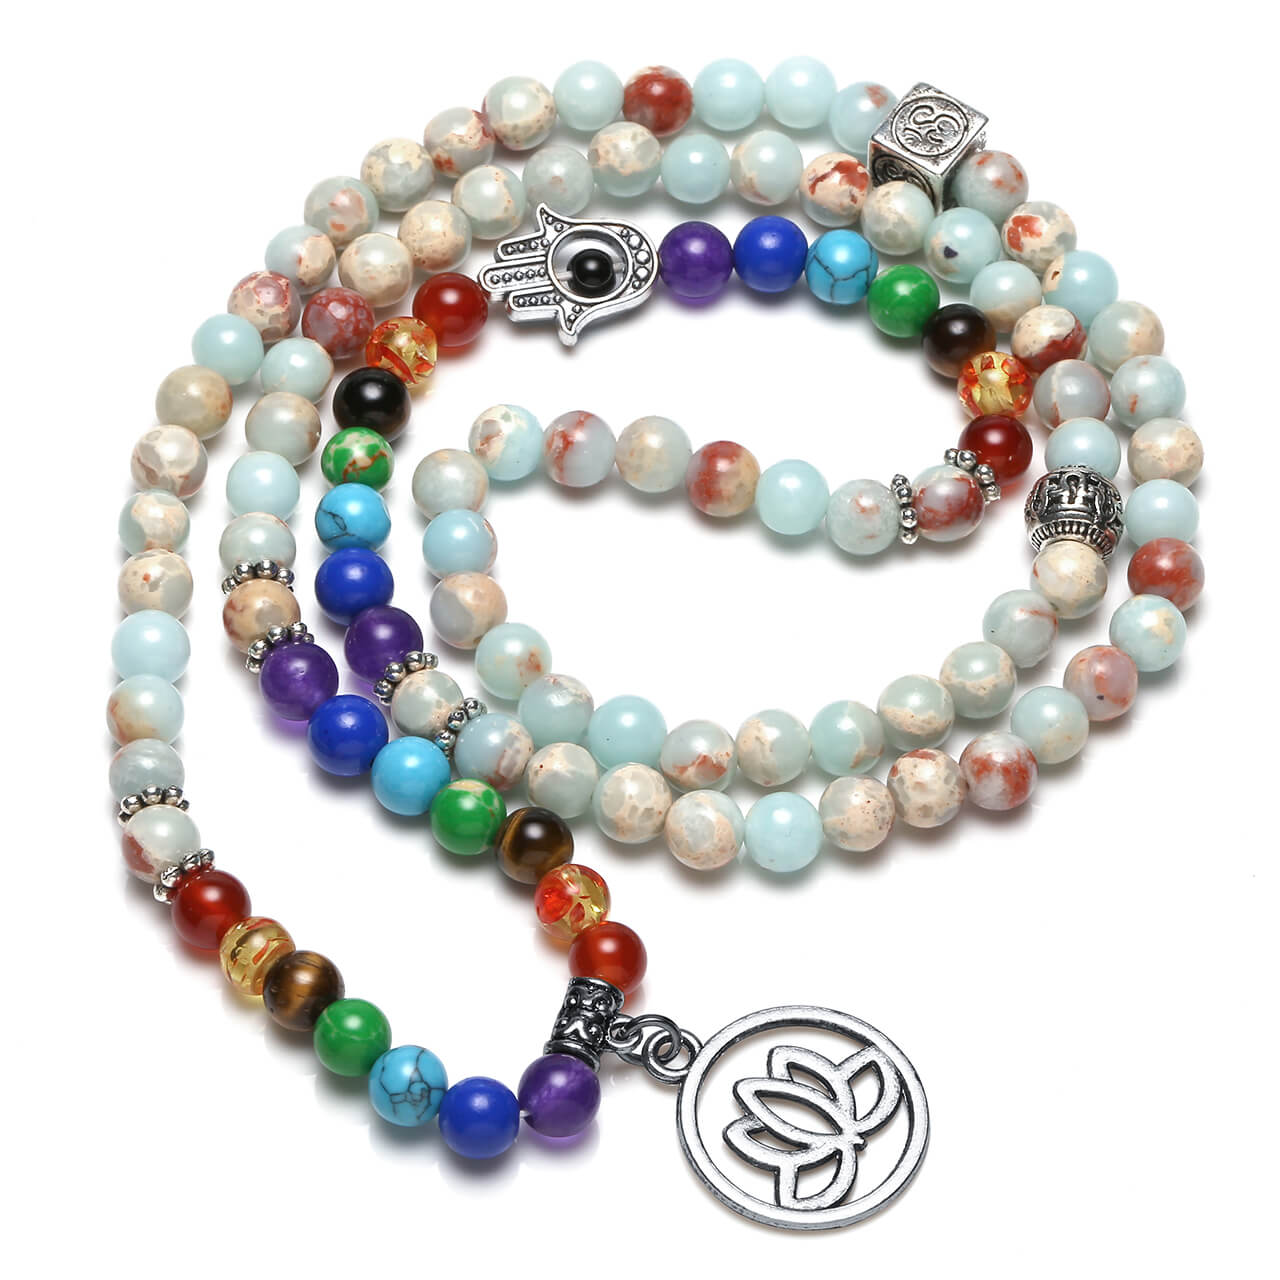 Jovivi 108 beads buddhist prayer bracelets mala bracelet with lotus charm